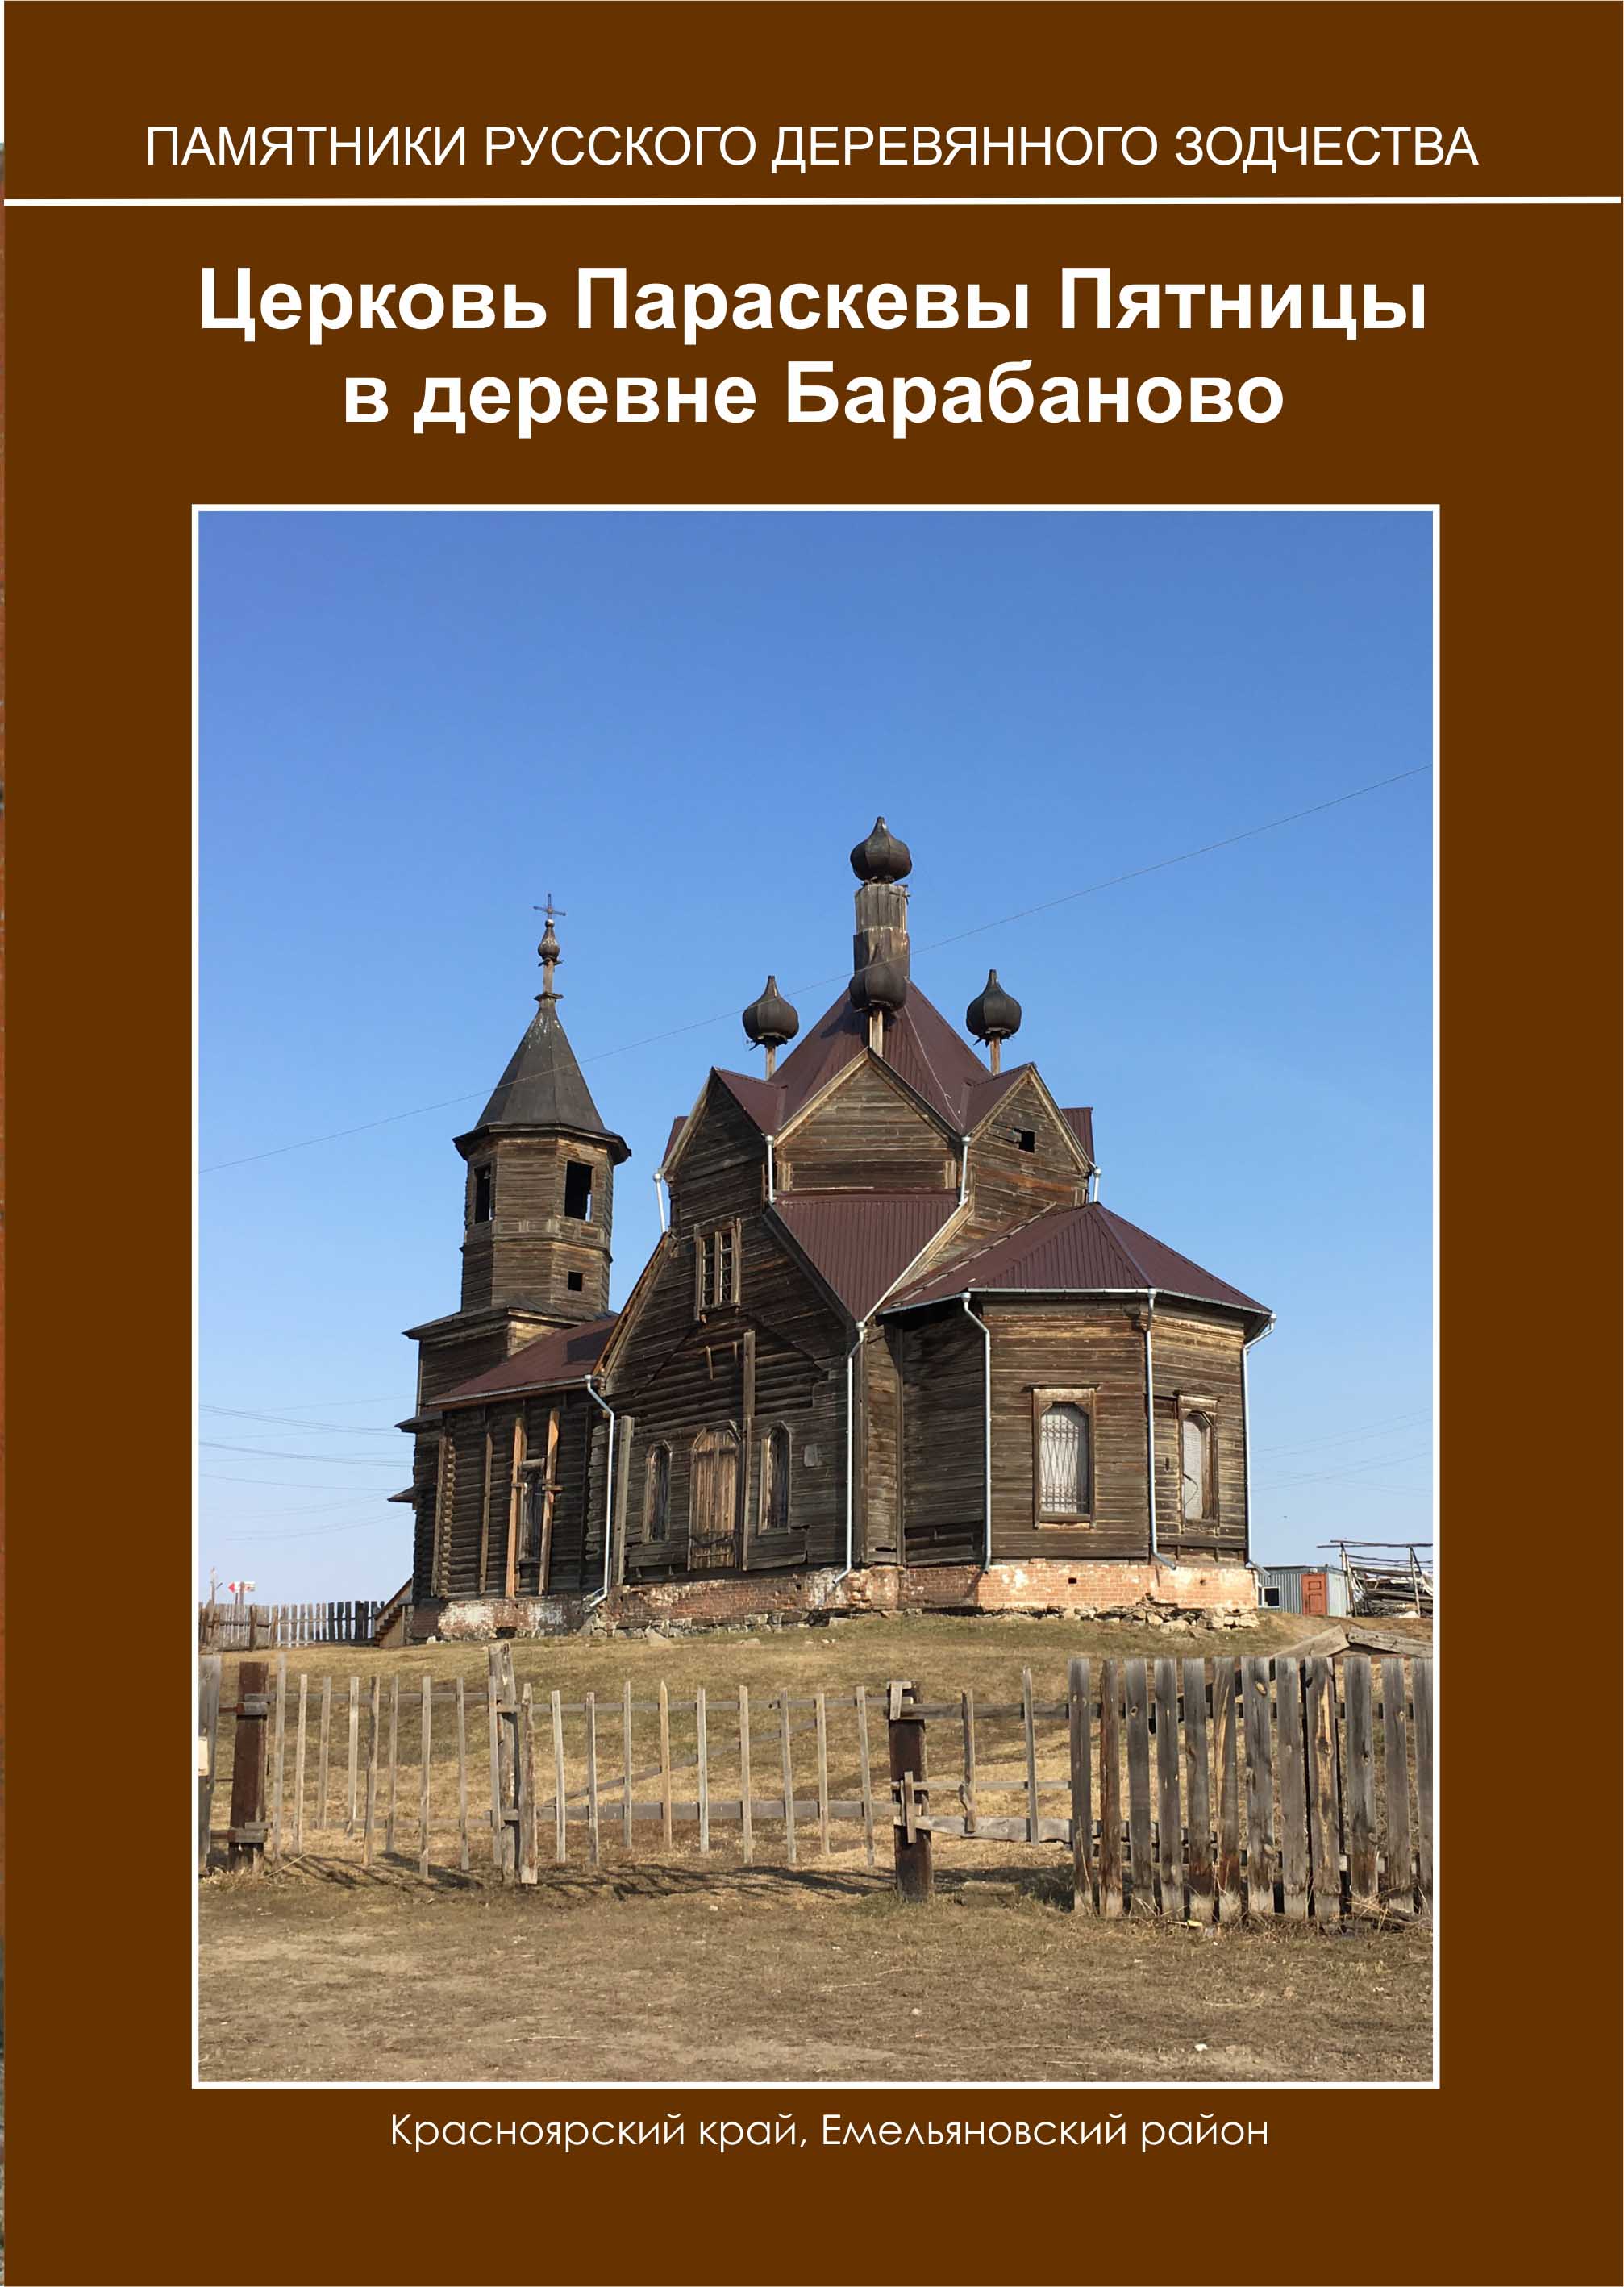 Церковь Параскевы Пятницы в деревне Барабаново